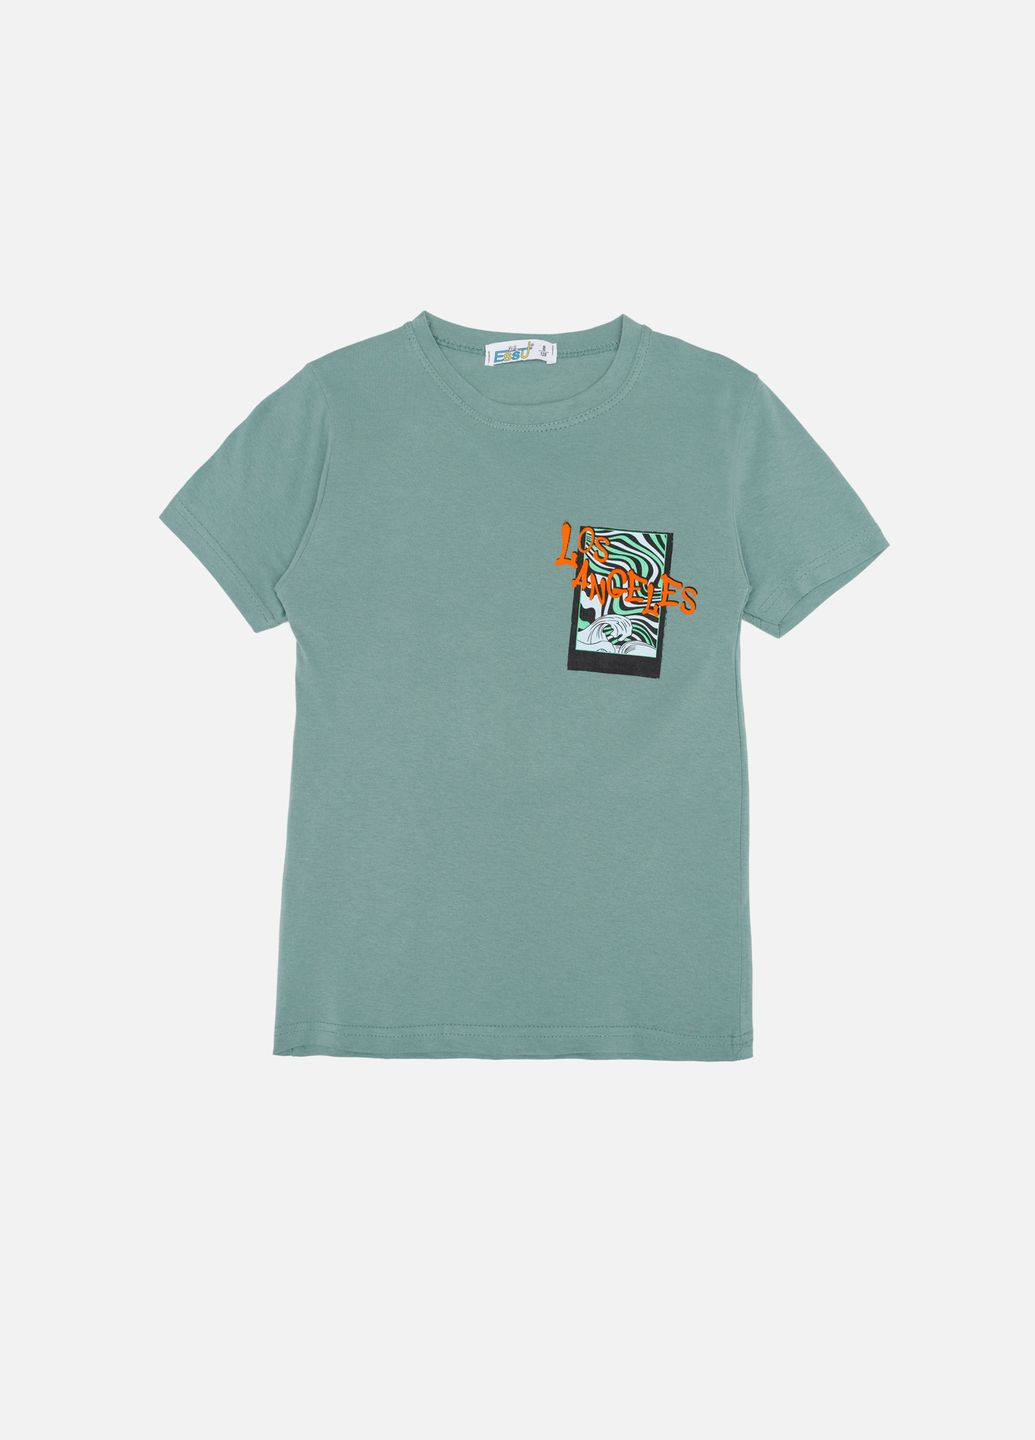 Оливковая летняя футболка с коротким рукавом для мальчика цвет оливковый цб-00243943 Essu